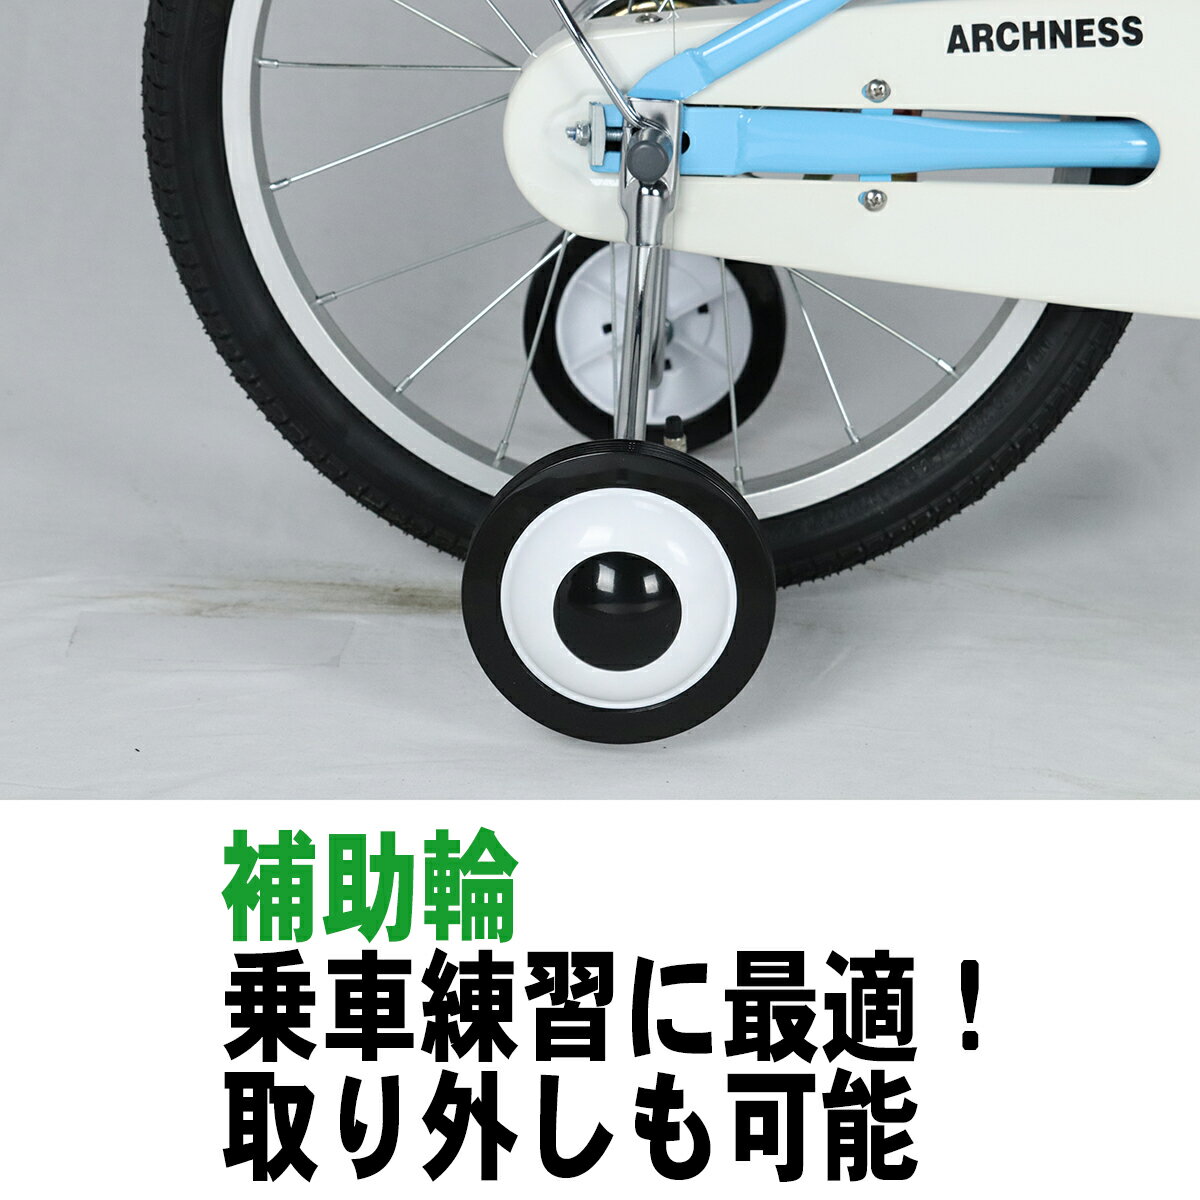 としての 本州 ジュニア 自転車 幼児車 アイトン ARCHNESS 18S-2 グリーン：アイトン 送料無料 18インチ 補助輪 カゴ